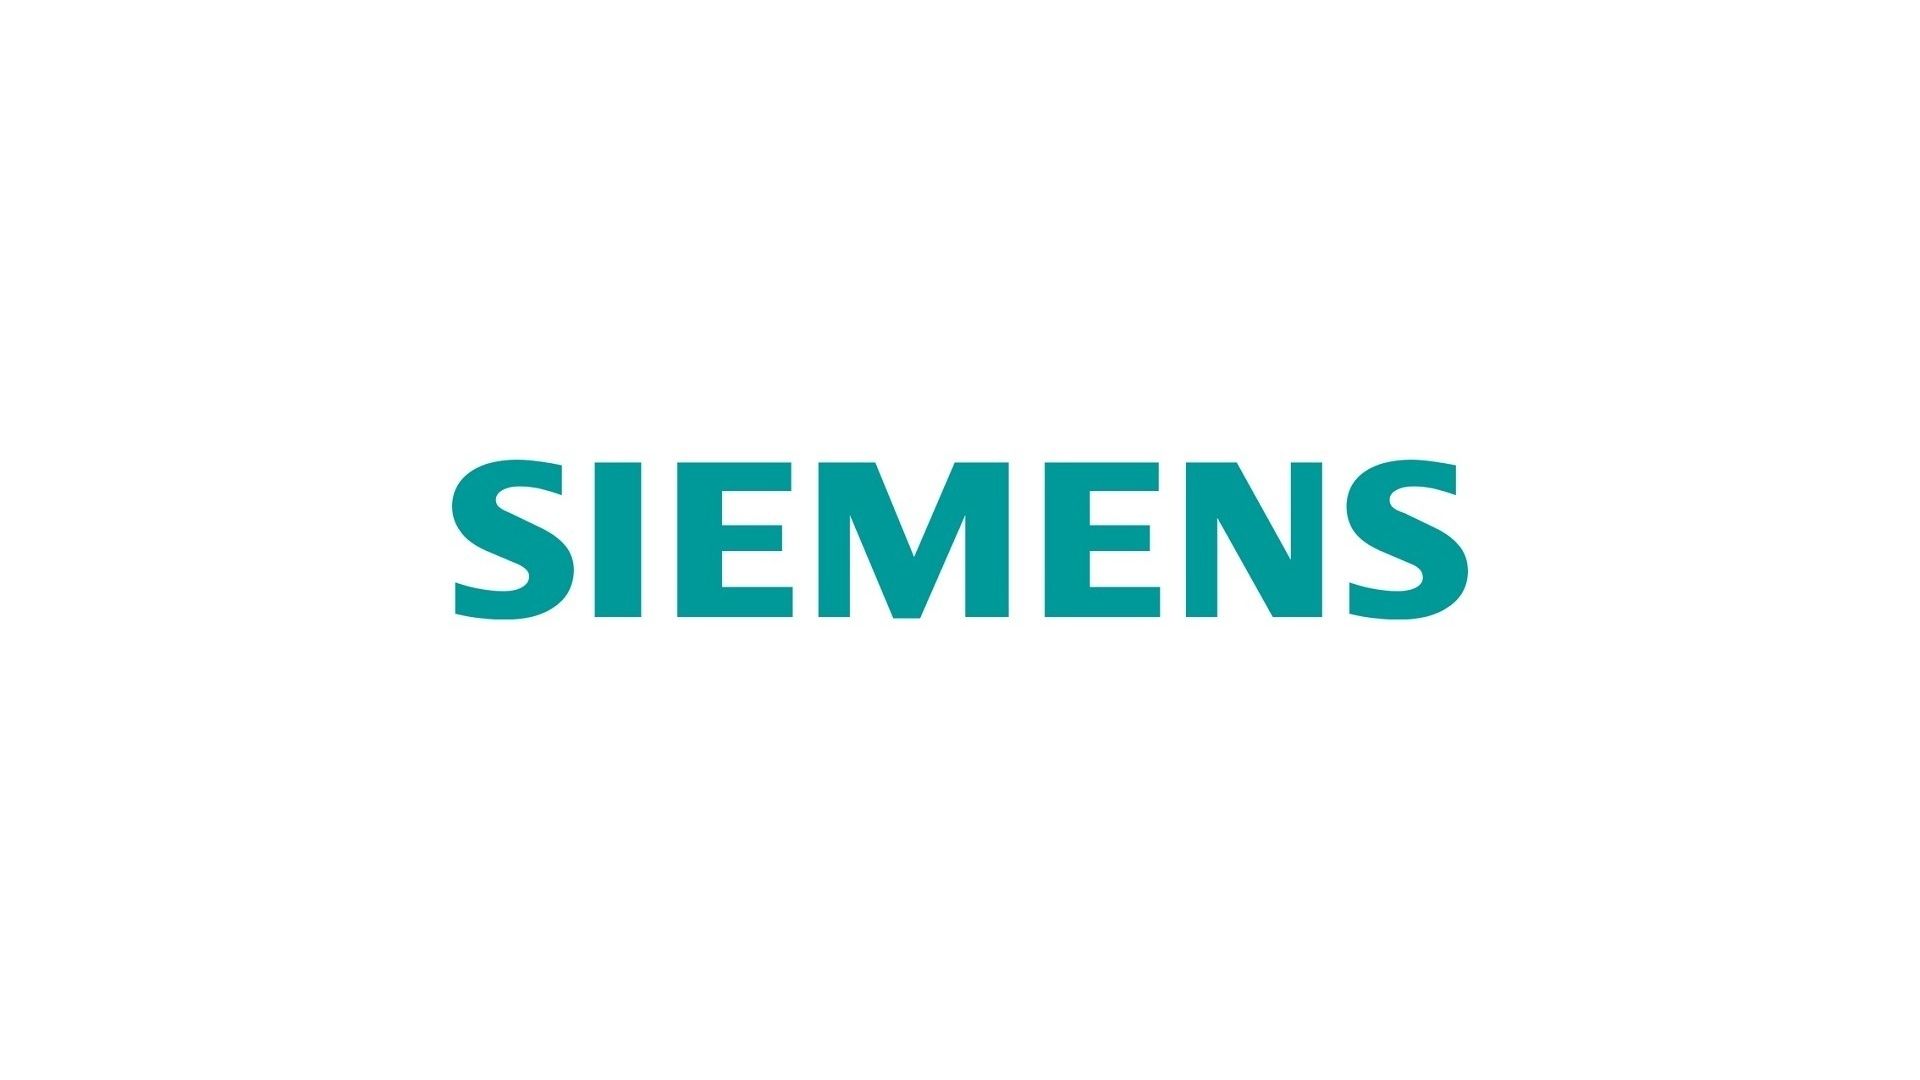 Siemens Desktop Background. Siemens